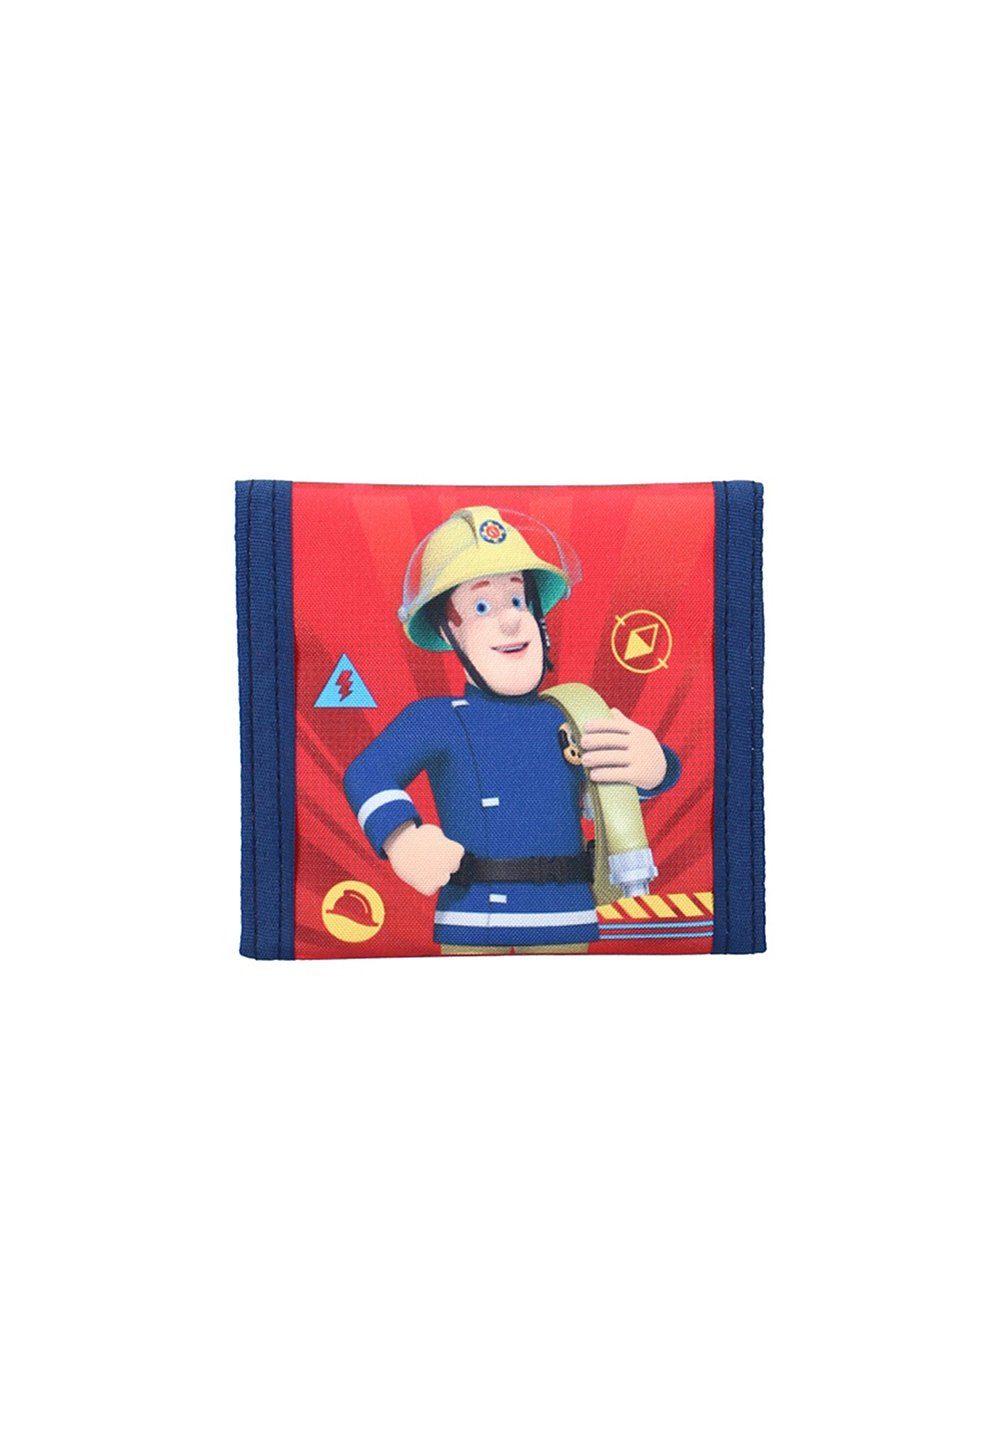 Feuerwehrmann Sam Geldbörse Kinder Geldbeutel Portemonnaie Brieftasche